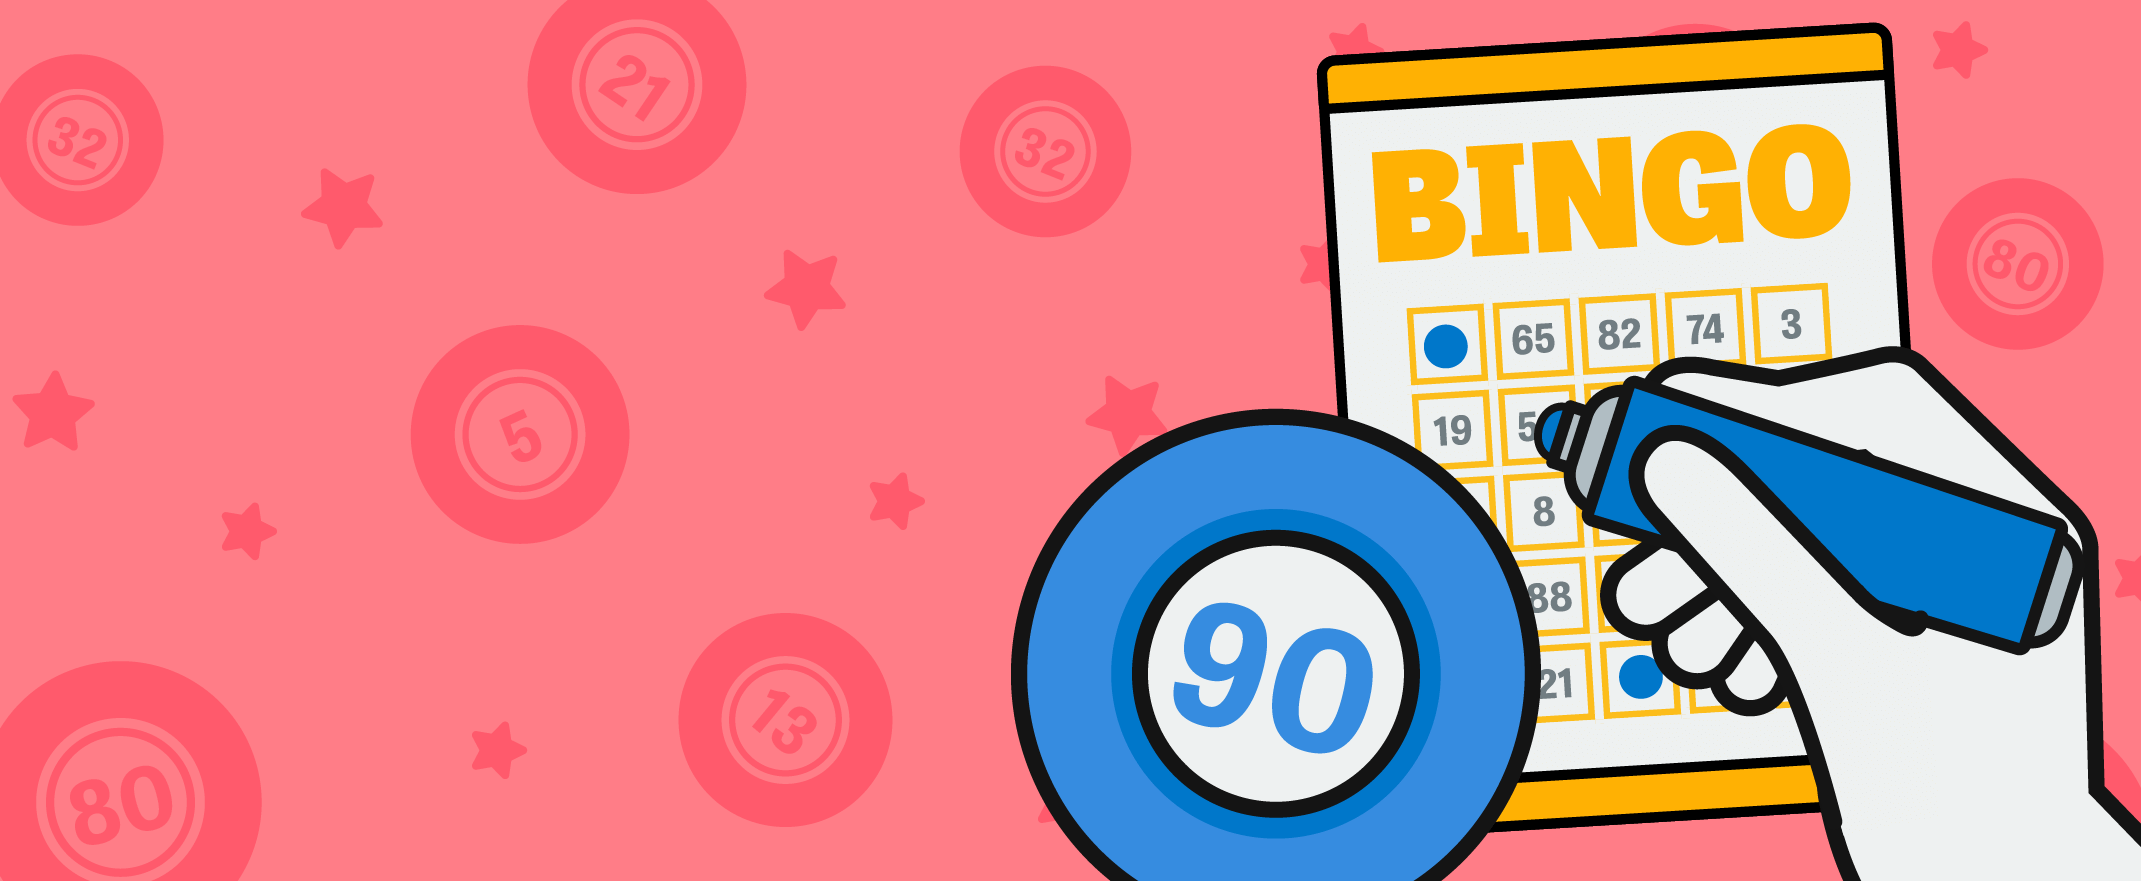 Las Mejores Estrategias Para Jugar Al Bingo Online